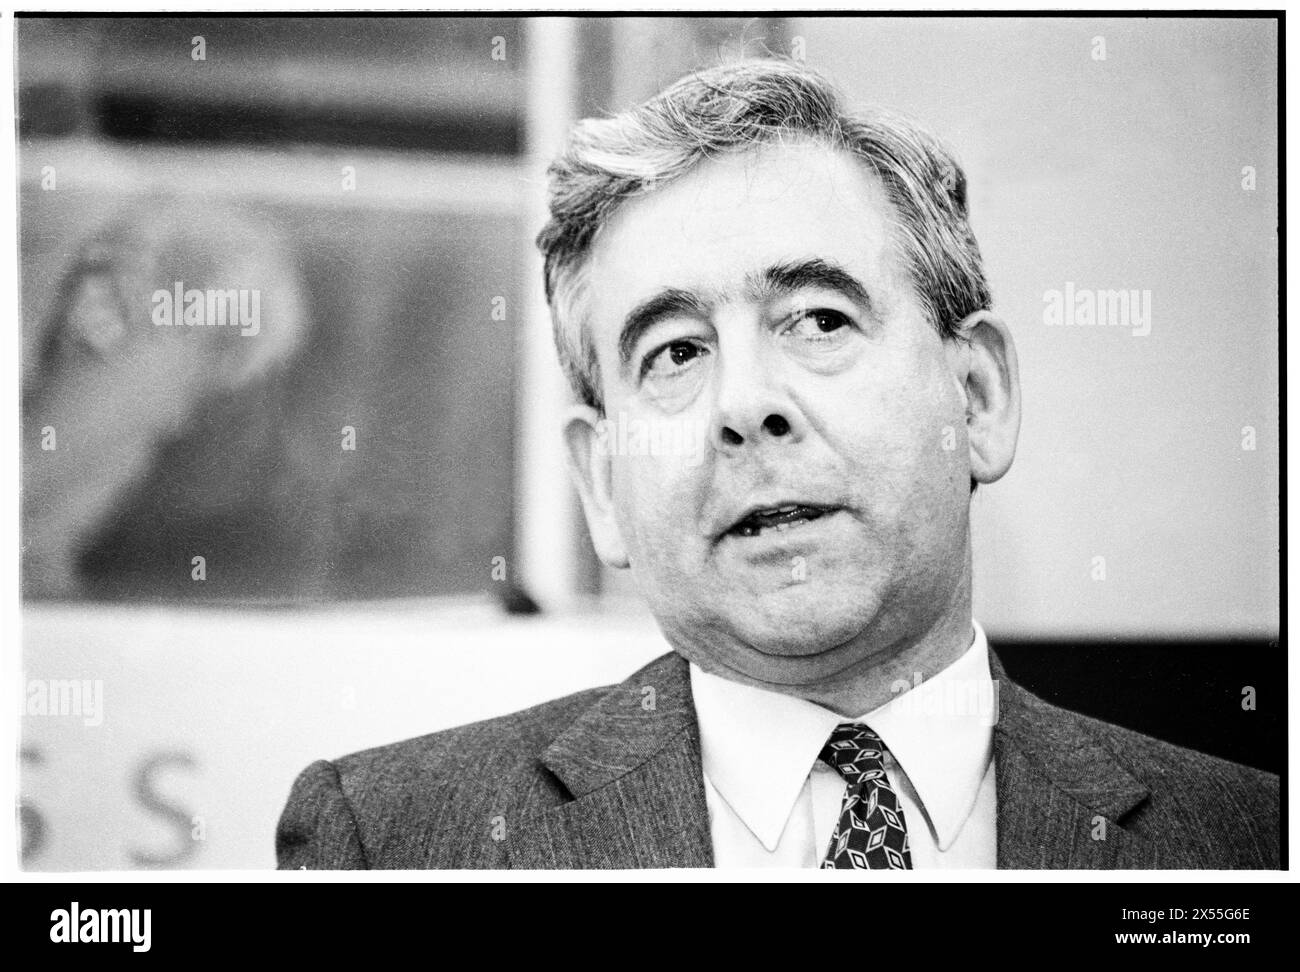 DAFYDD WIGLEY, PLAID CYMRU, 1995: Il leader di Plaid Cymru Dafydd Wigley durante un'università ospitò un panel politico pubblico sullo sviluppo regionale. I politici gallesi si riuniscono per una conferenza sullo sviluppo presso l'Università di Glamorgan a Treforest, Galles, Regno Unito, il 5 giugno 1995. Foto: Rob Watkins. INFO: Dafydd Wigley, un importante politico gallese, servì come leader di Plaid Cymru dal 1981 al 1984 e di nuovo dal 1991 al 2000. Noto per la sua appassionata difesa dell'indipendenza gallese, ha svolto un ruolo fondamentale nel plasmare la politica gallese. Foto Stock